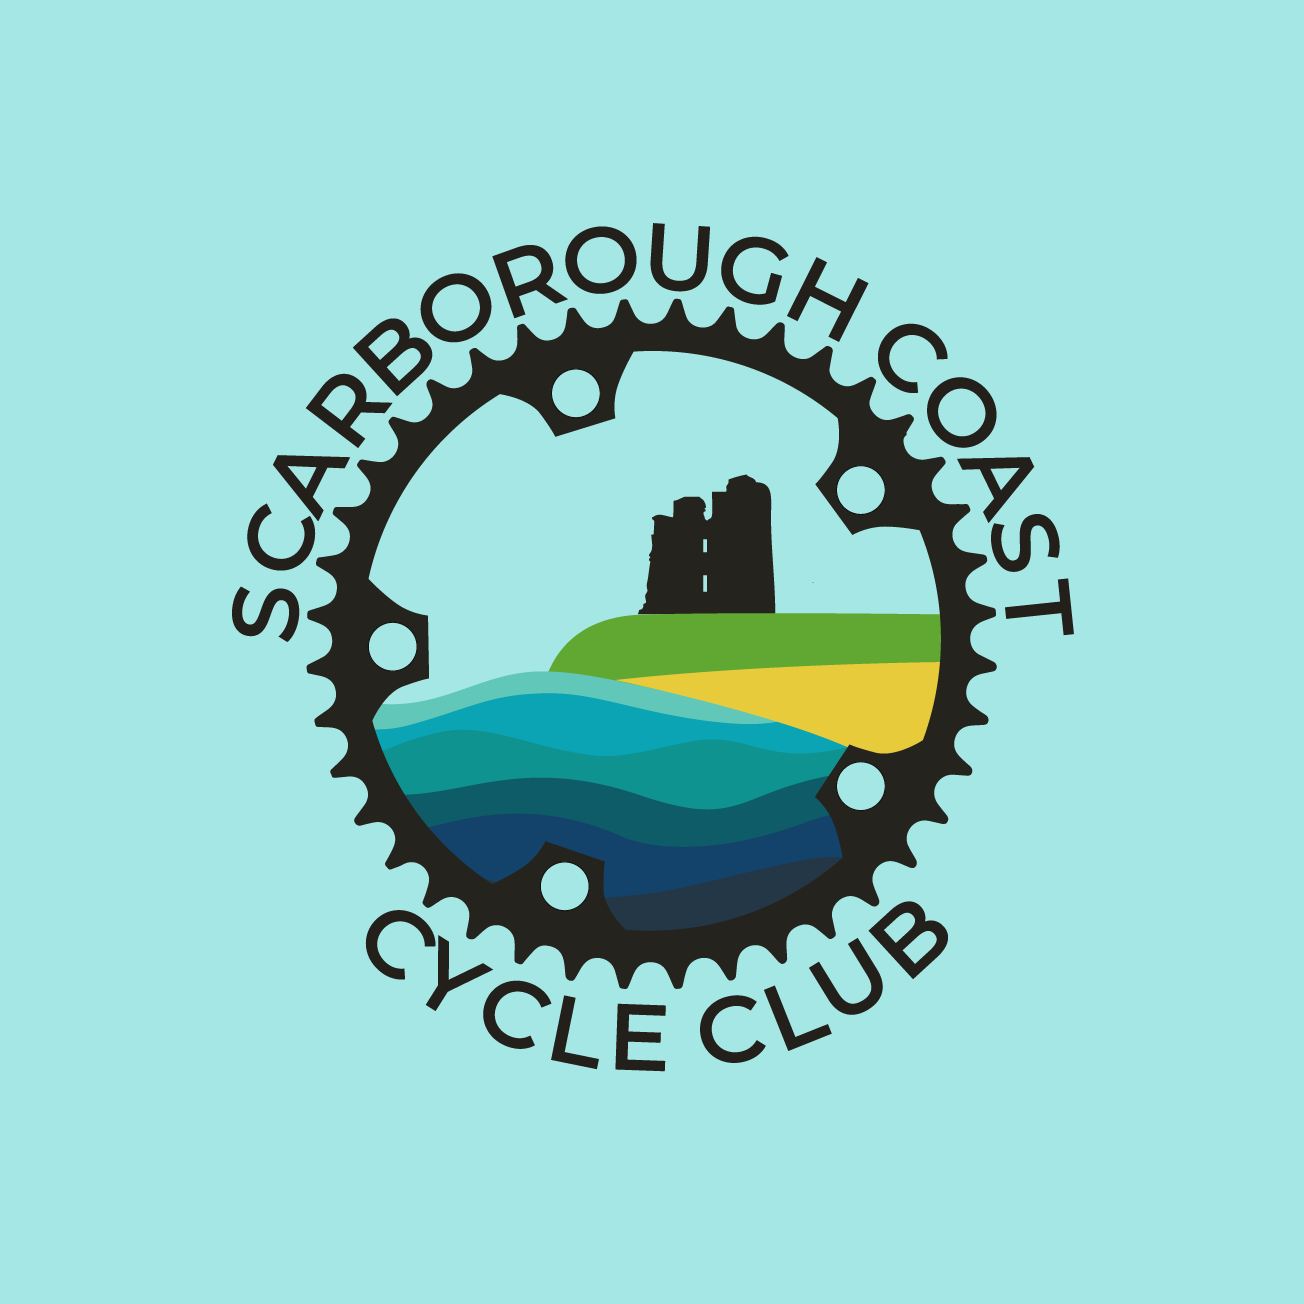 Club Image for SCARBOROUGH CCC